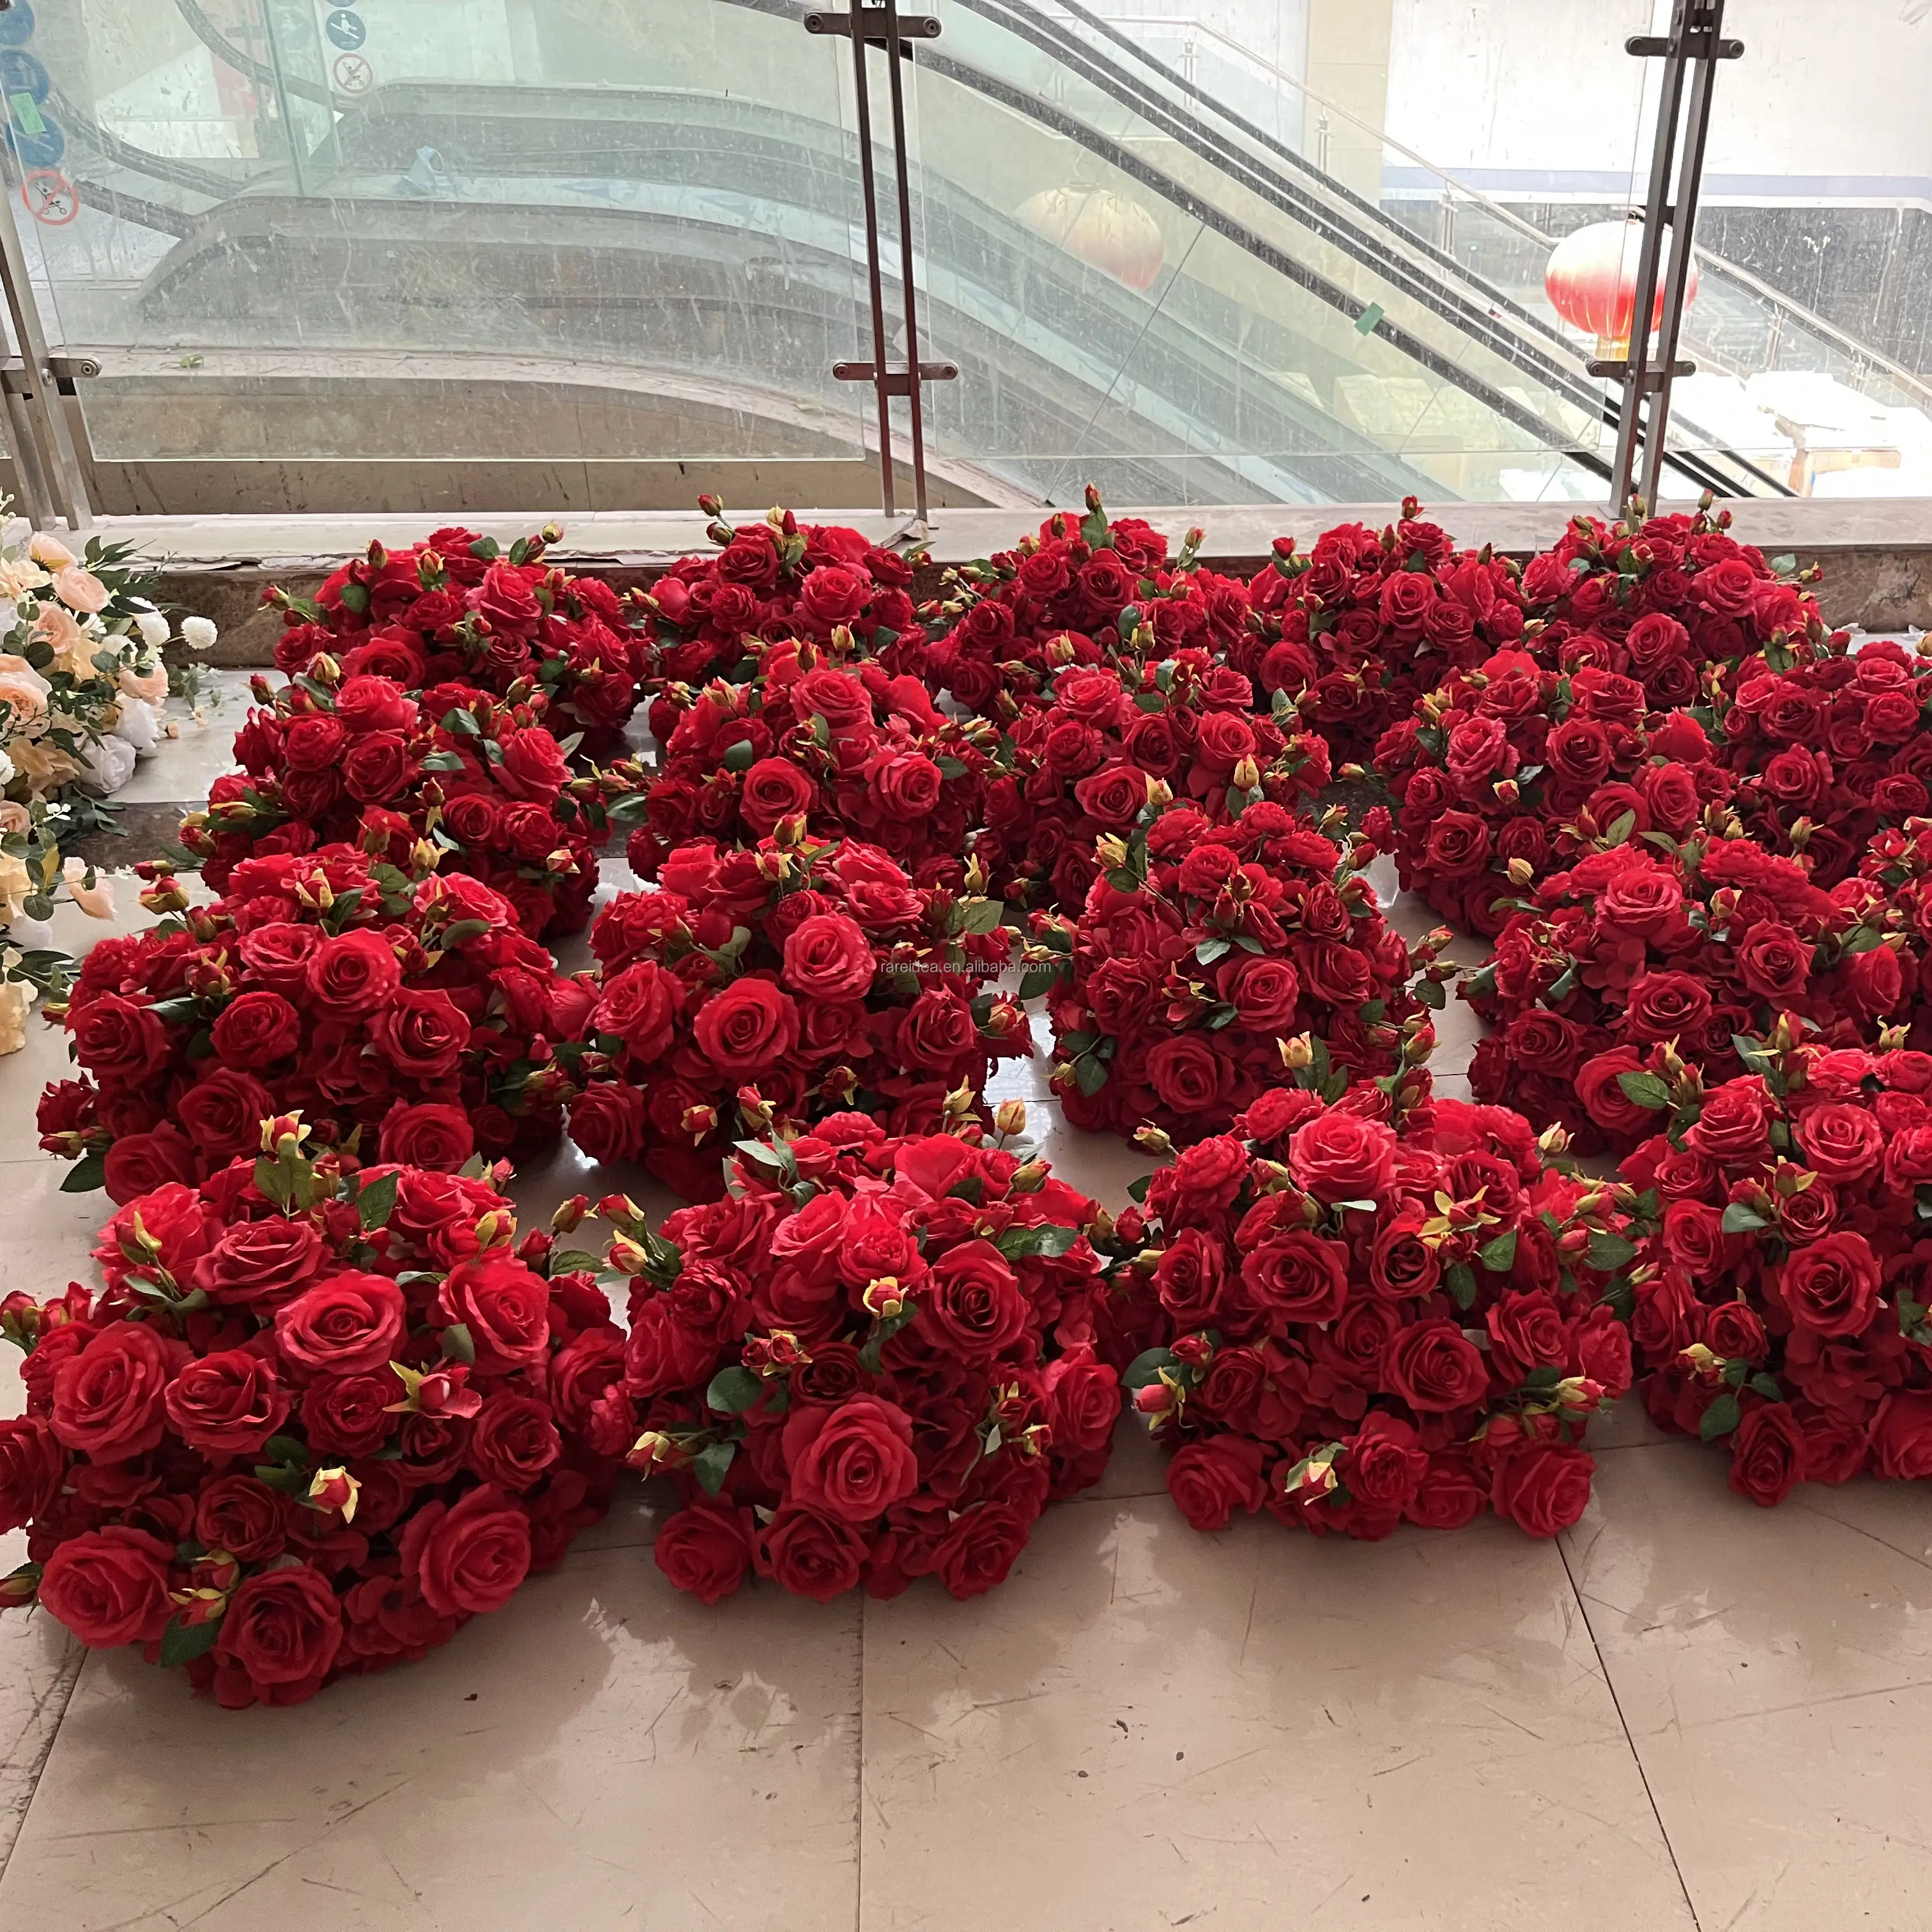 قطع مركزية من الورود الاصطناعية الحمراء لتزيين طاولة الزفاف